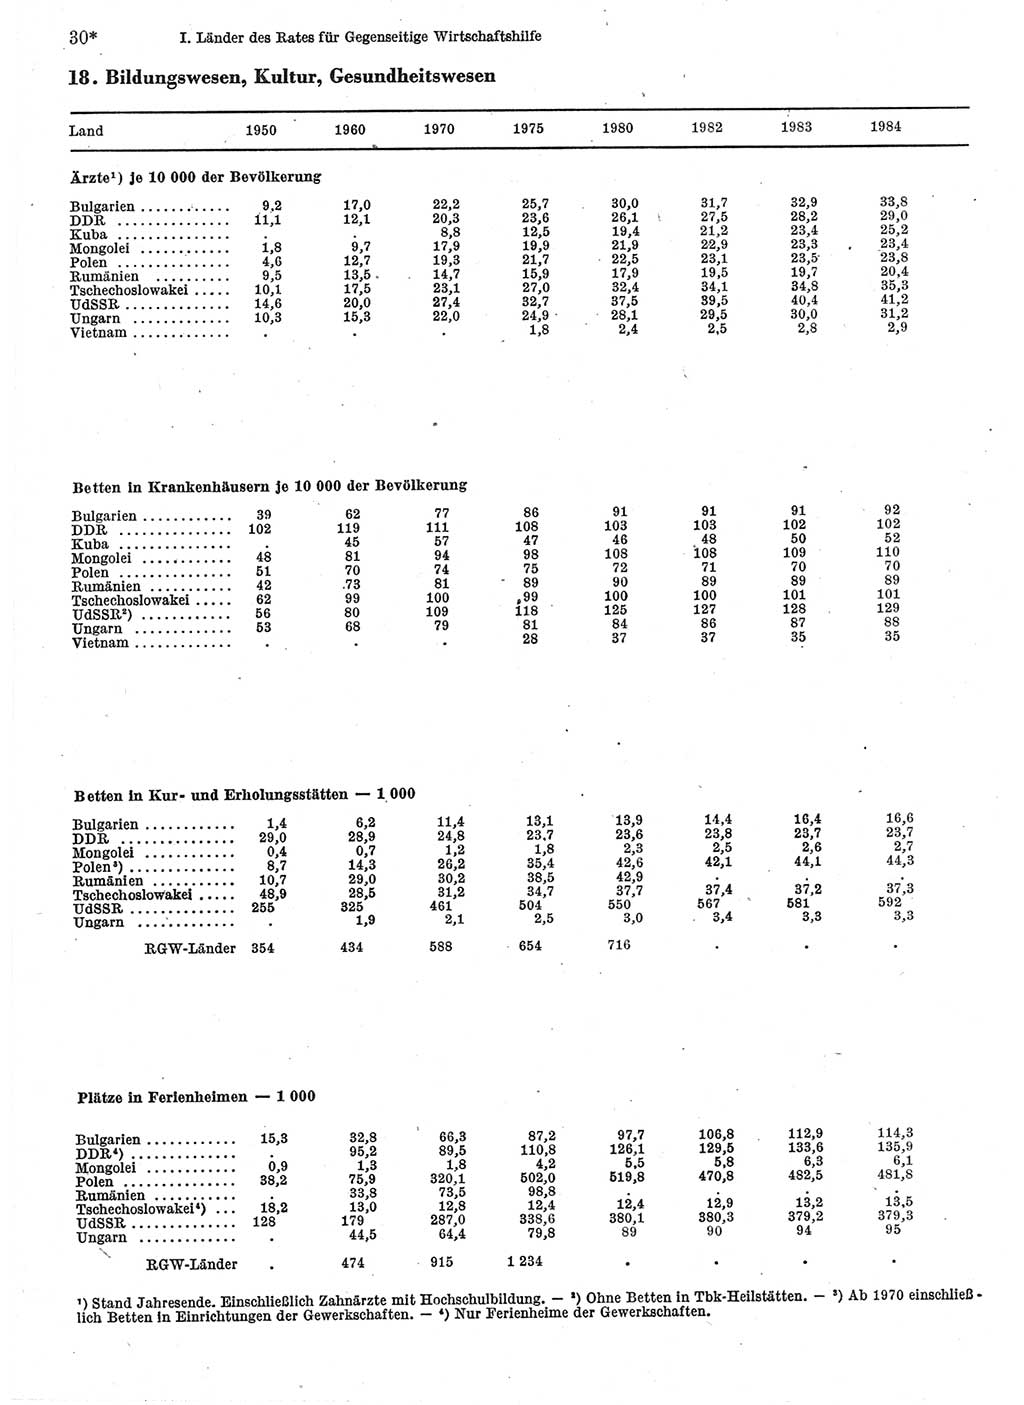 Statistisches Jahrbuch der Deutschen Demokratischen Republik (DDR) 1986, Seite 30 (Stat. Jb. DDR 1986, S. 30)